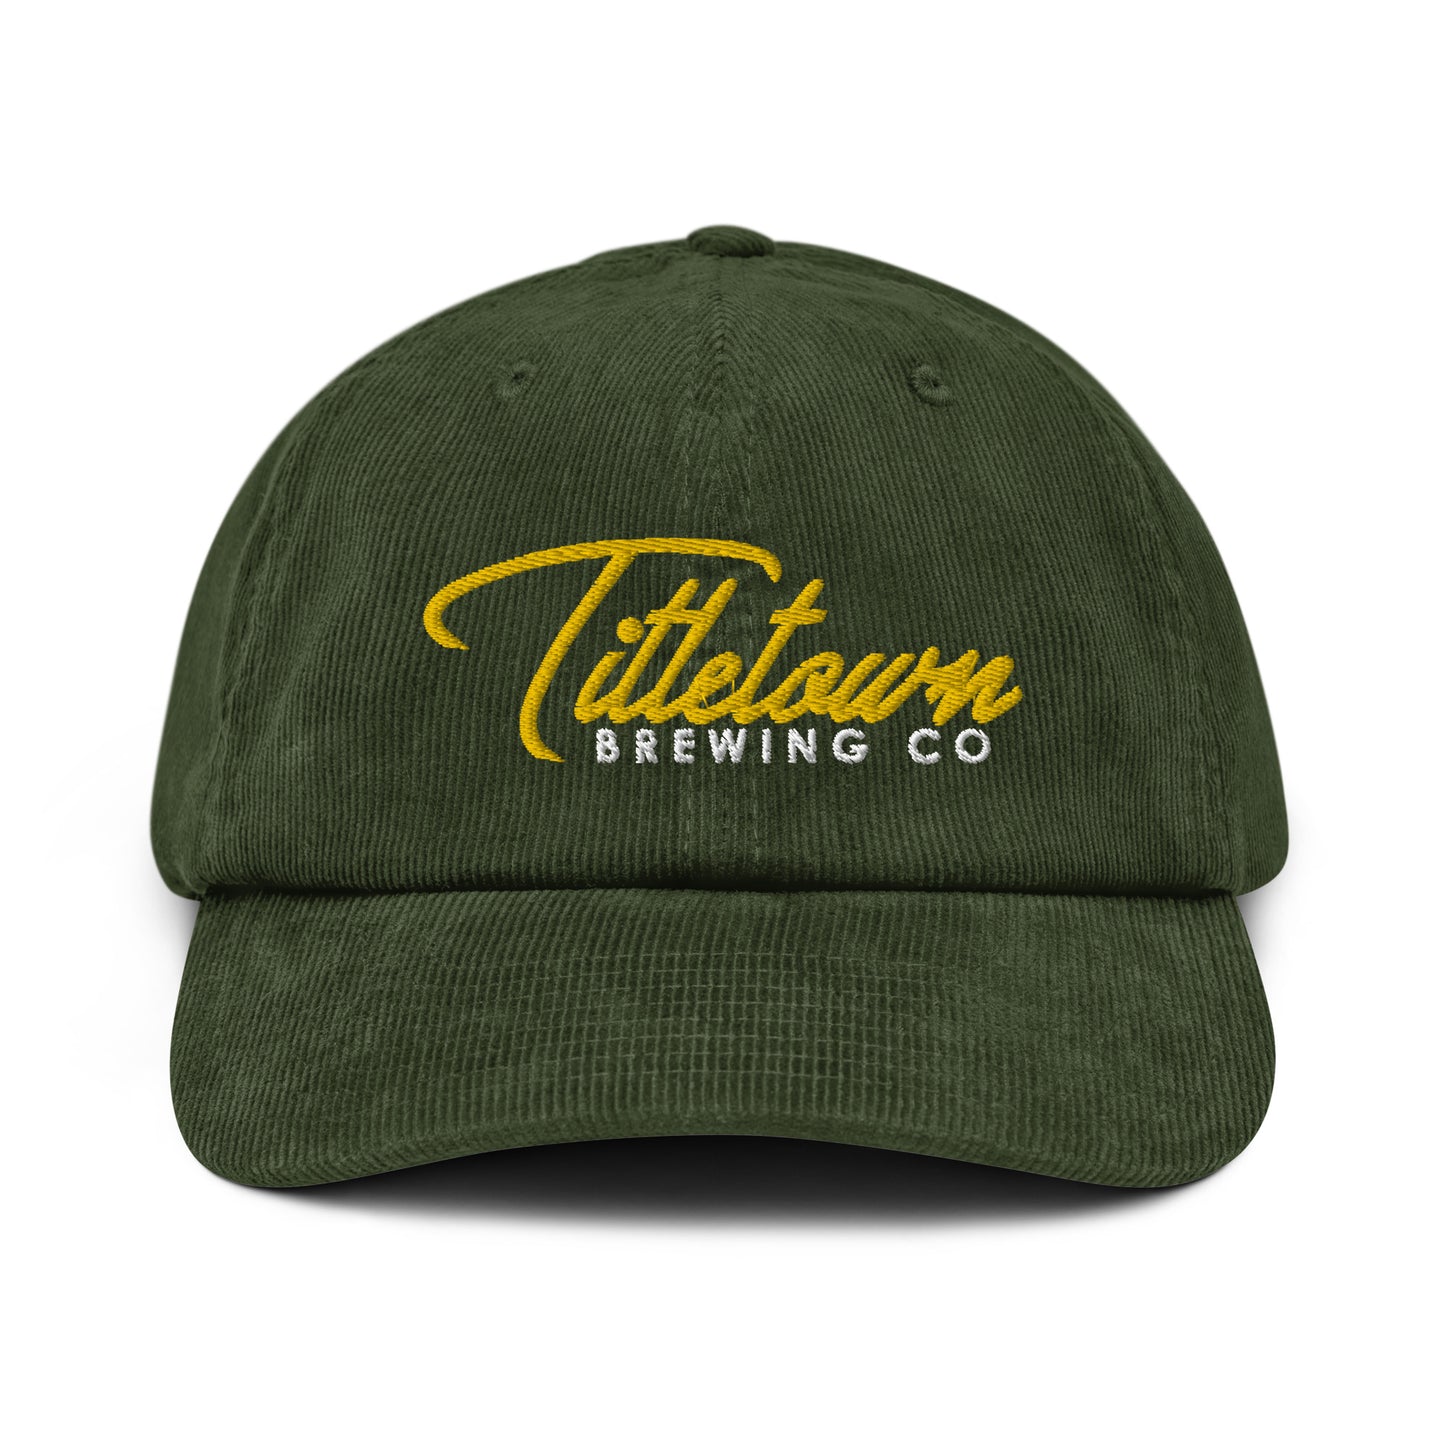 Vintage Titletown Brewing Co. Cursive Corduroy hat